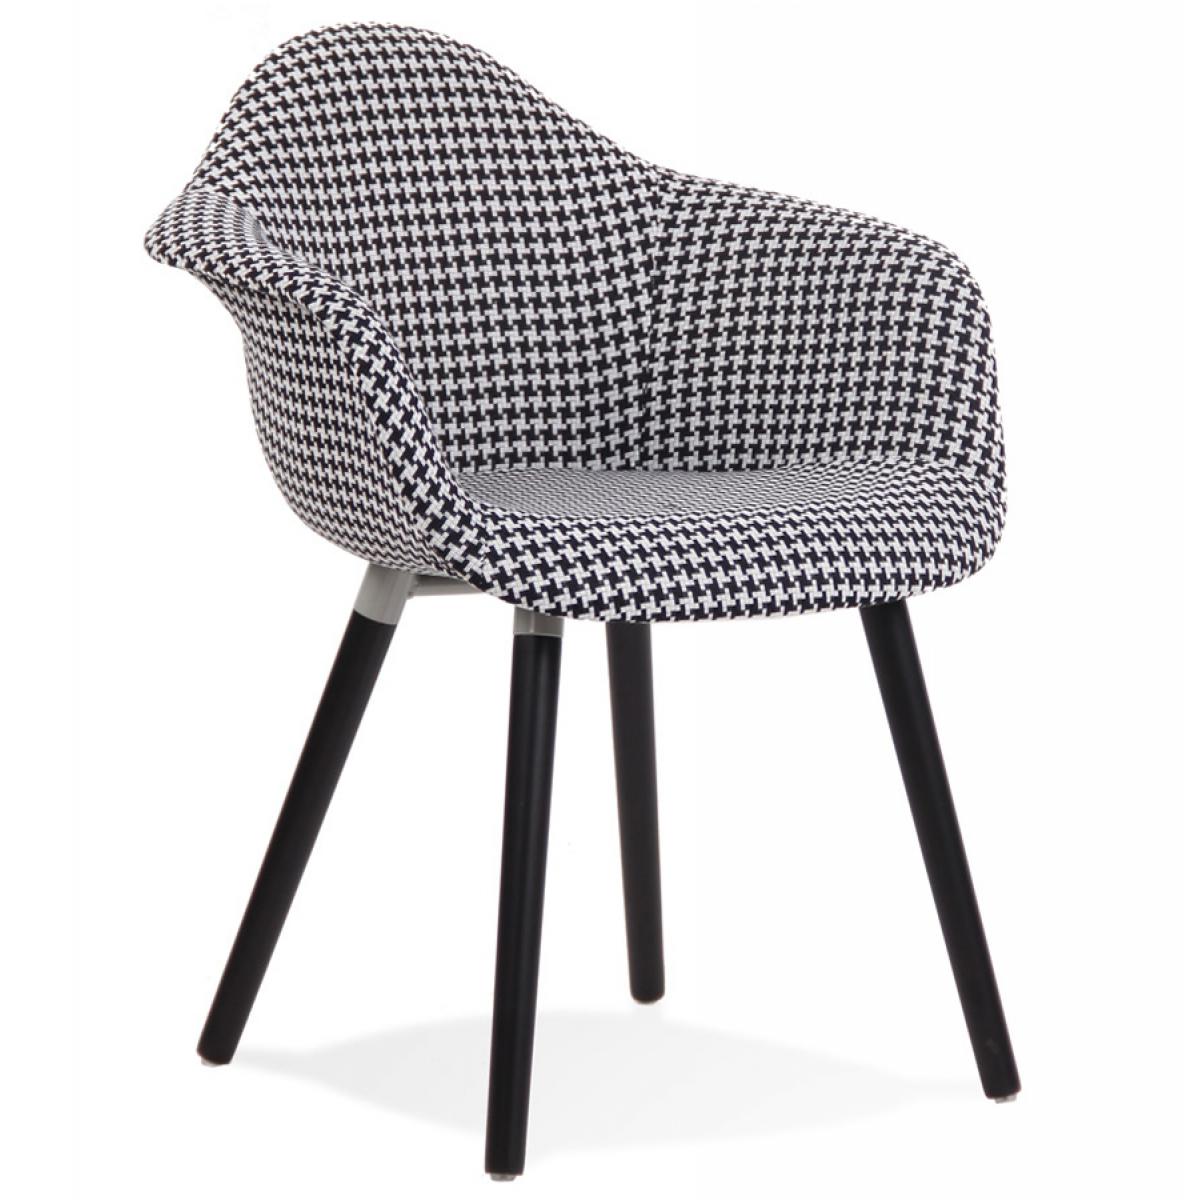 Alterego - Chaise design avec accoudoirs 'LARA' en tissu pied de poule noir et blanc - Chaises